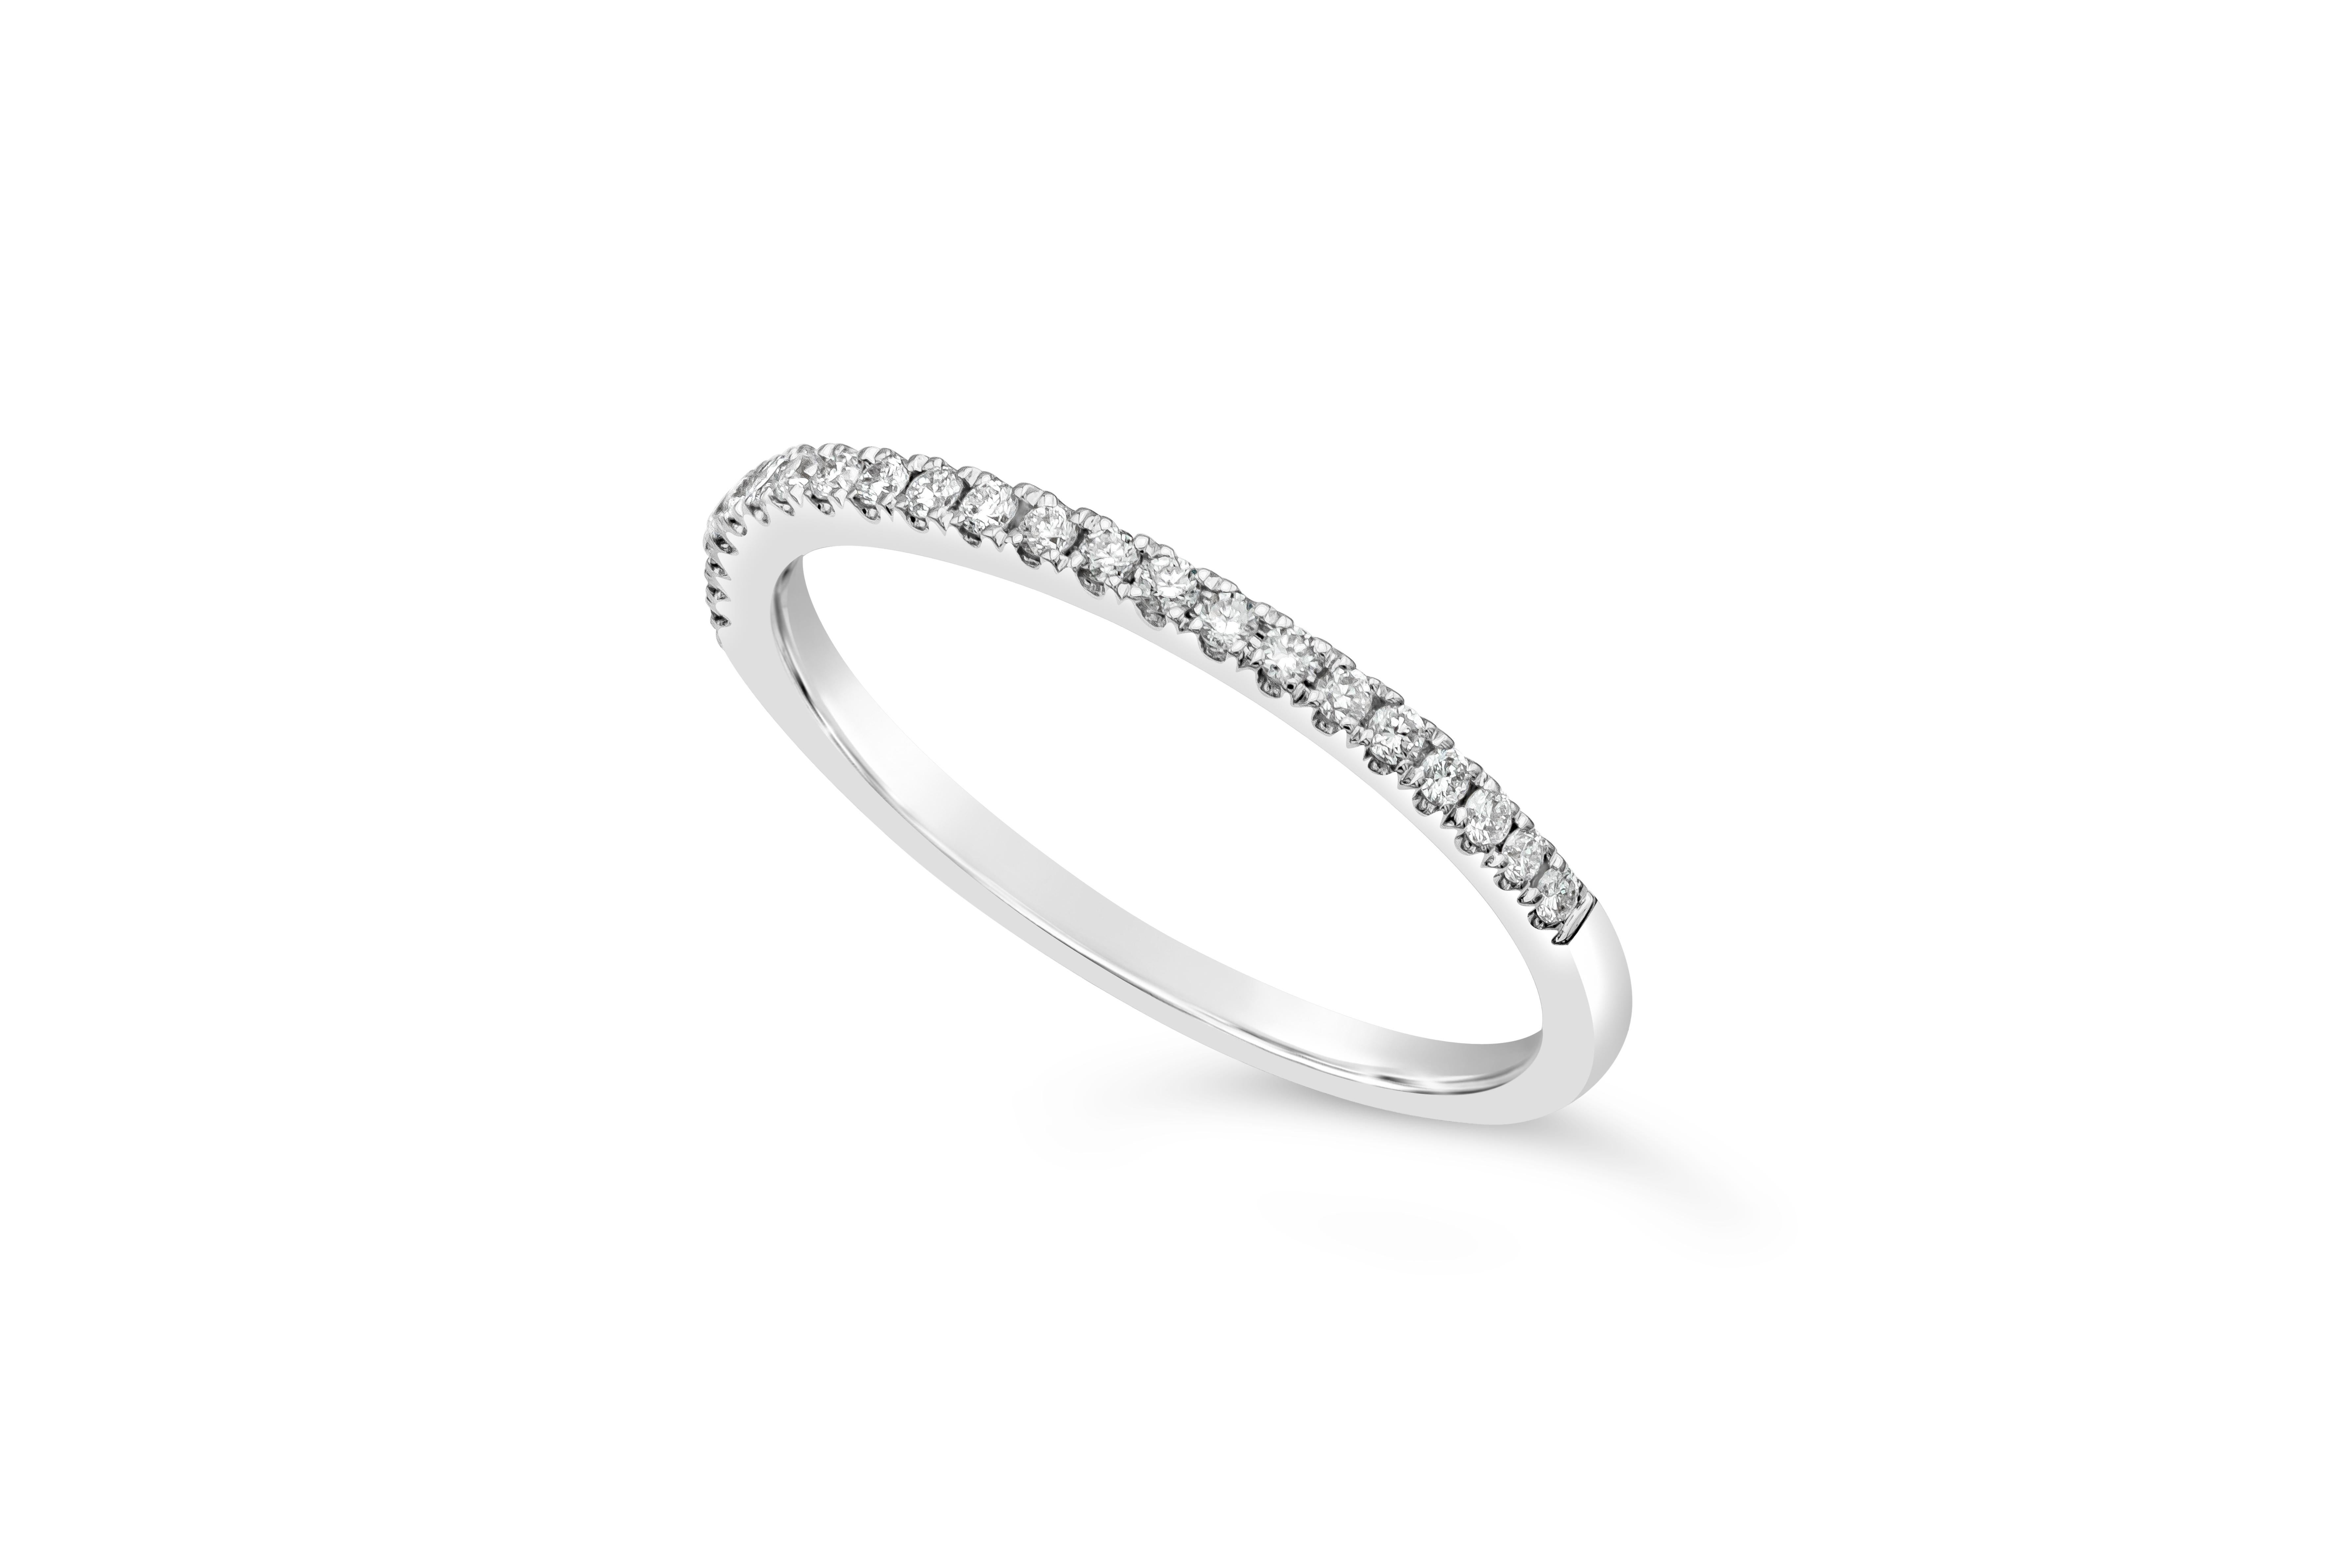 Un style classique d'anneau éternel à mi-chemin mettant en valeur une rangée de 22 diamants ronds de taille brillant pesant au total 0,13 carat, de couleur F-G et de clarté VS-SI.  Fabriqué en or blanc 18K

Style disponible dans différentes gammes